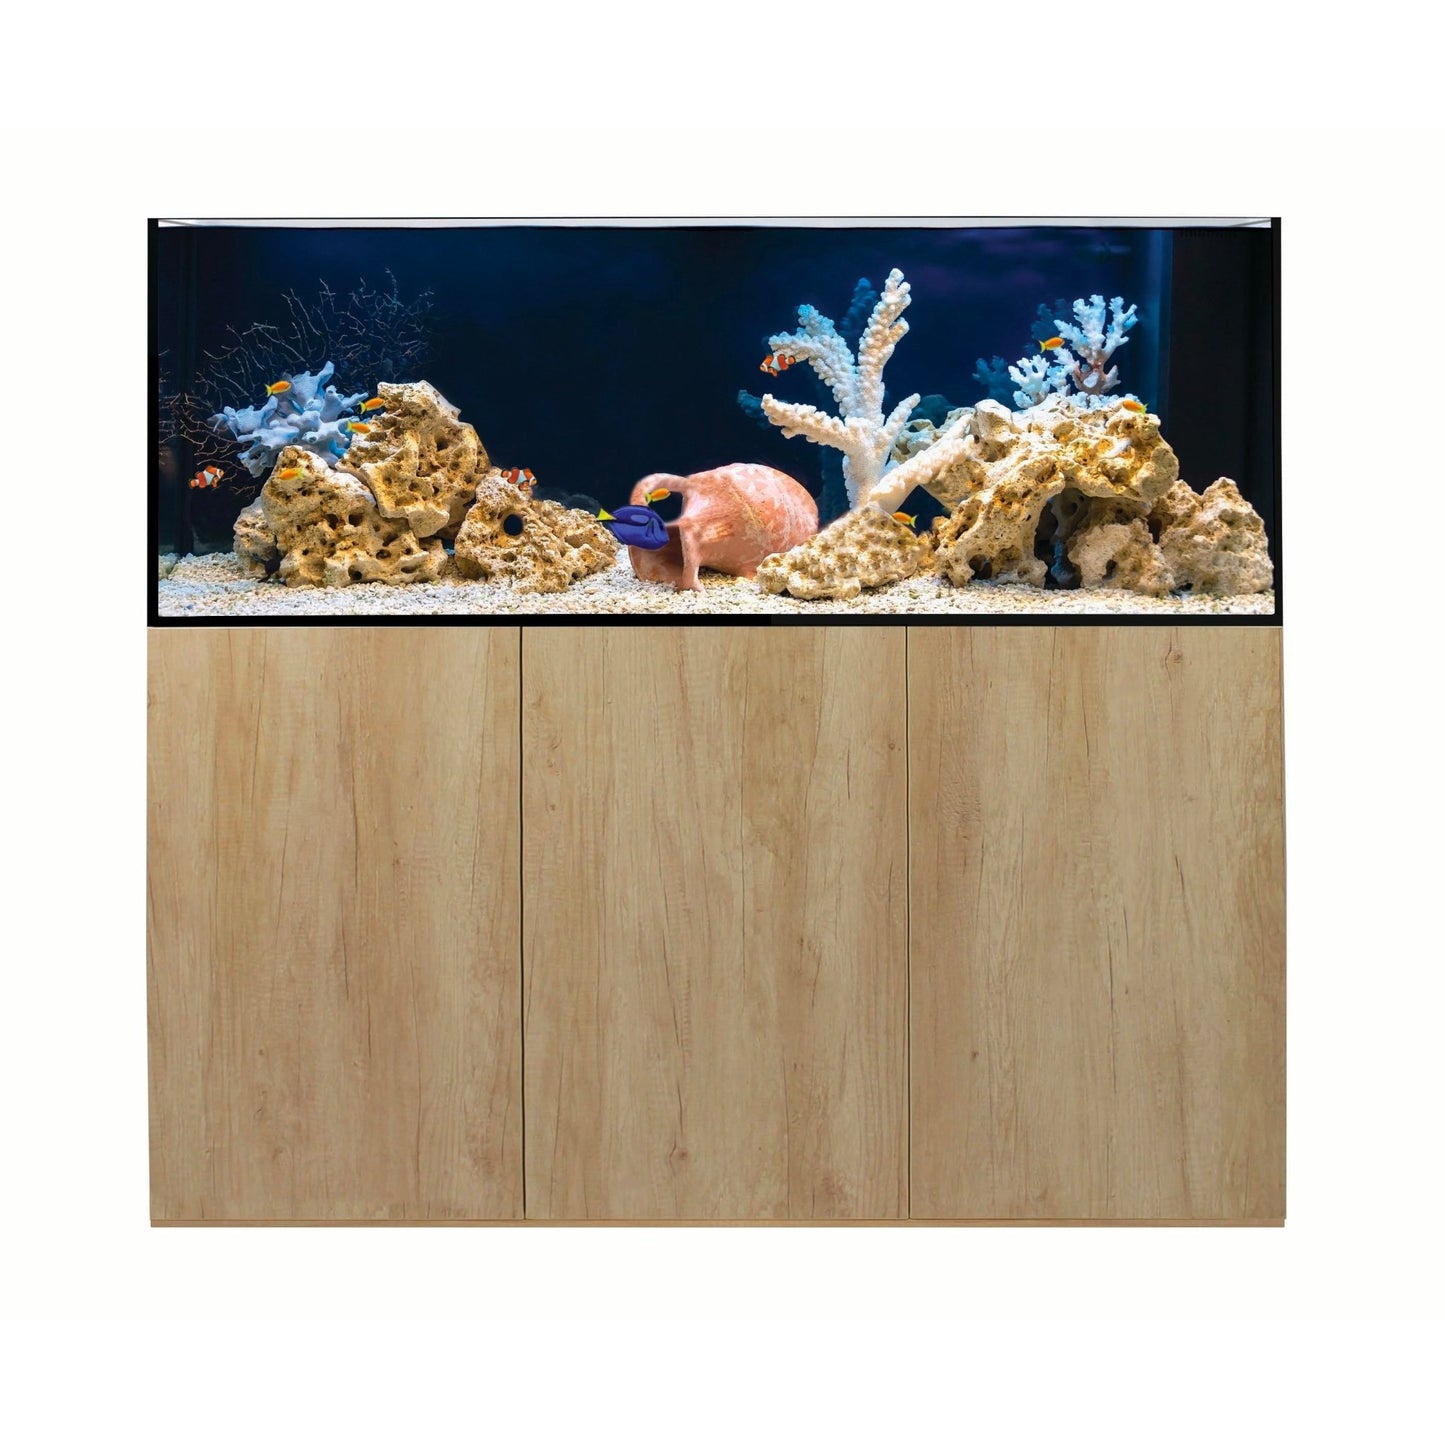 Aqua One ReefSys 434 Aquarium and Cabinet - Natural Nebraska Oak - Charterhouse Aquatics